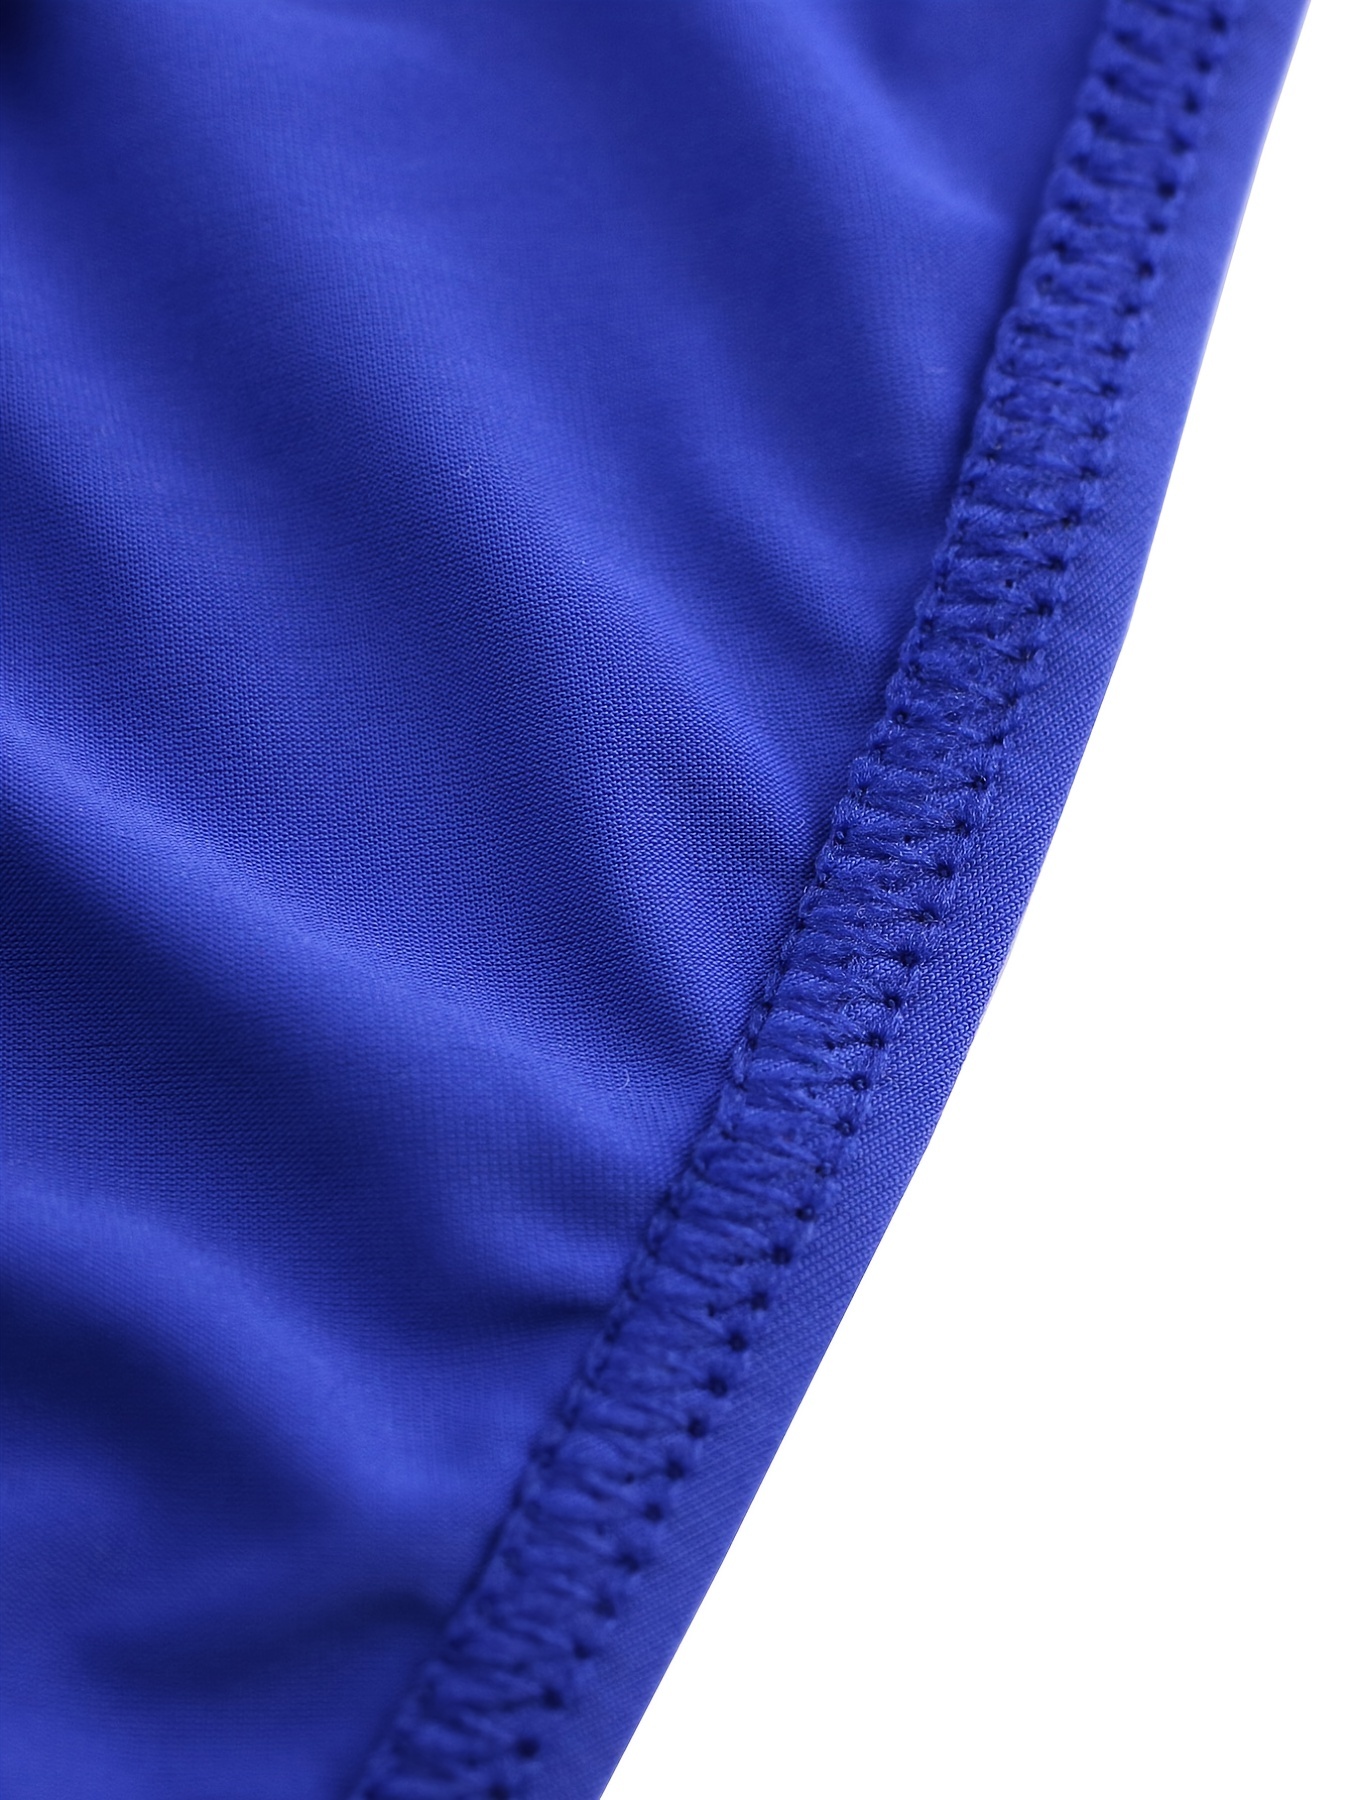 Spandex Plain Ultra-Soft Lycra Material IceSilk Men's Short